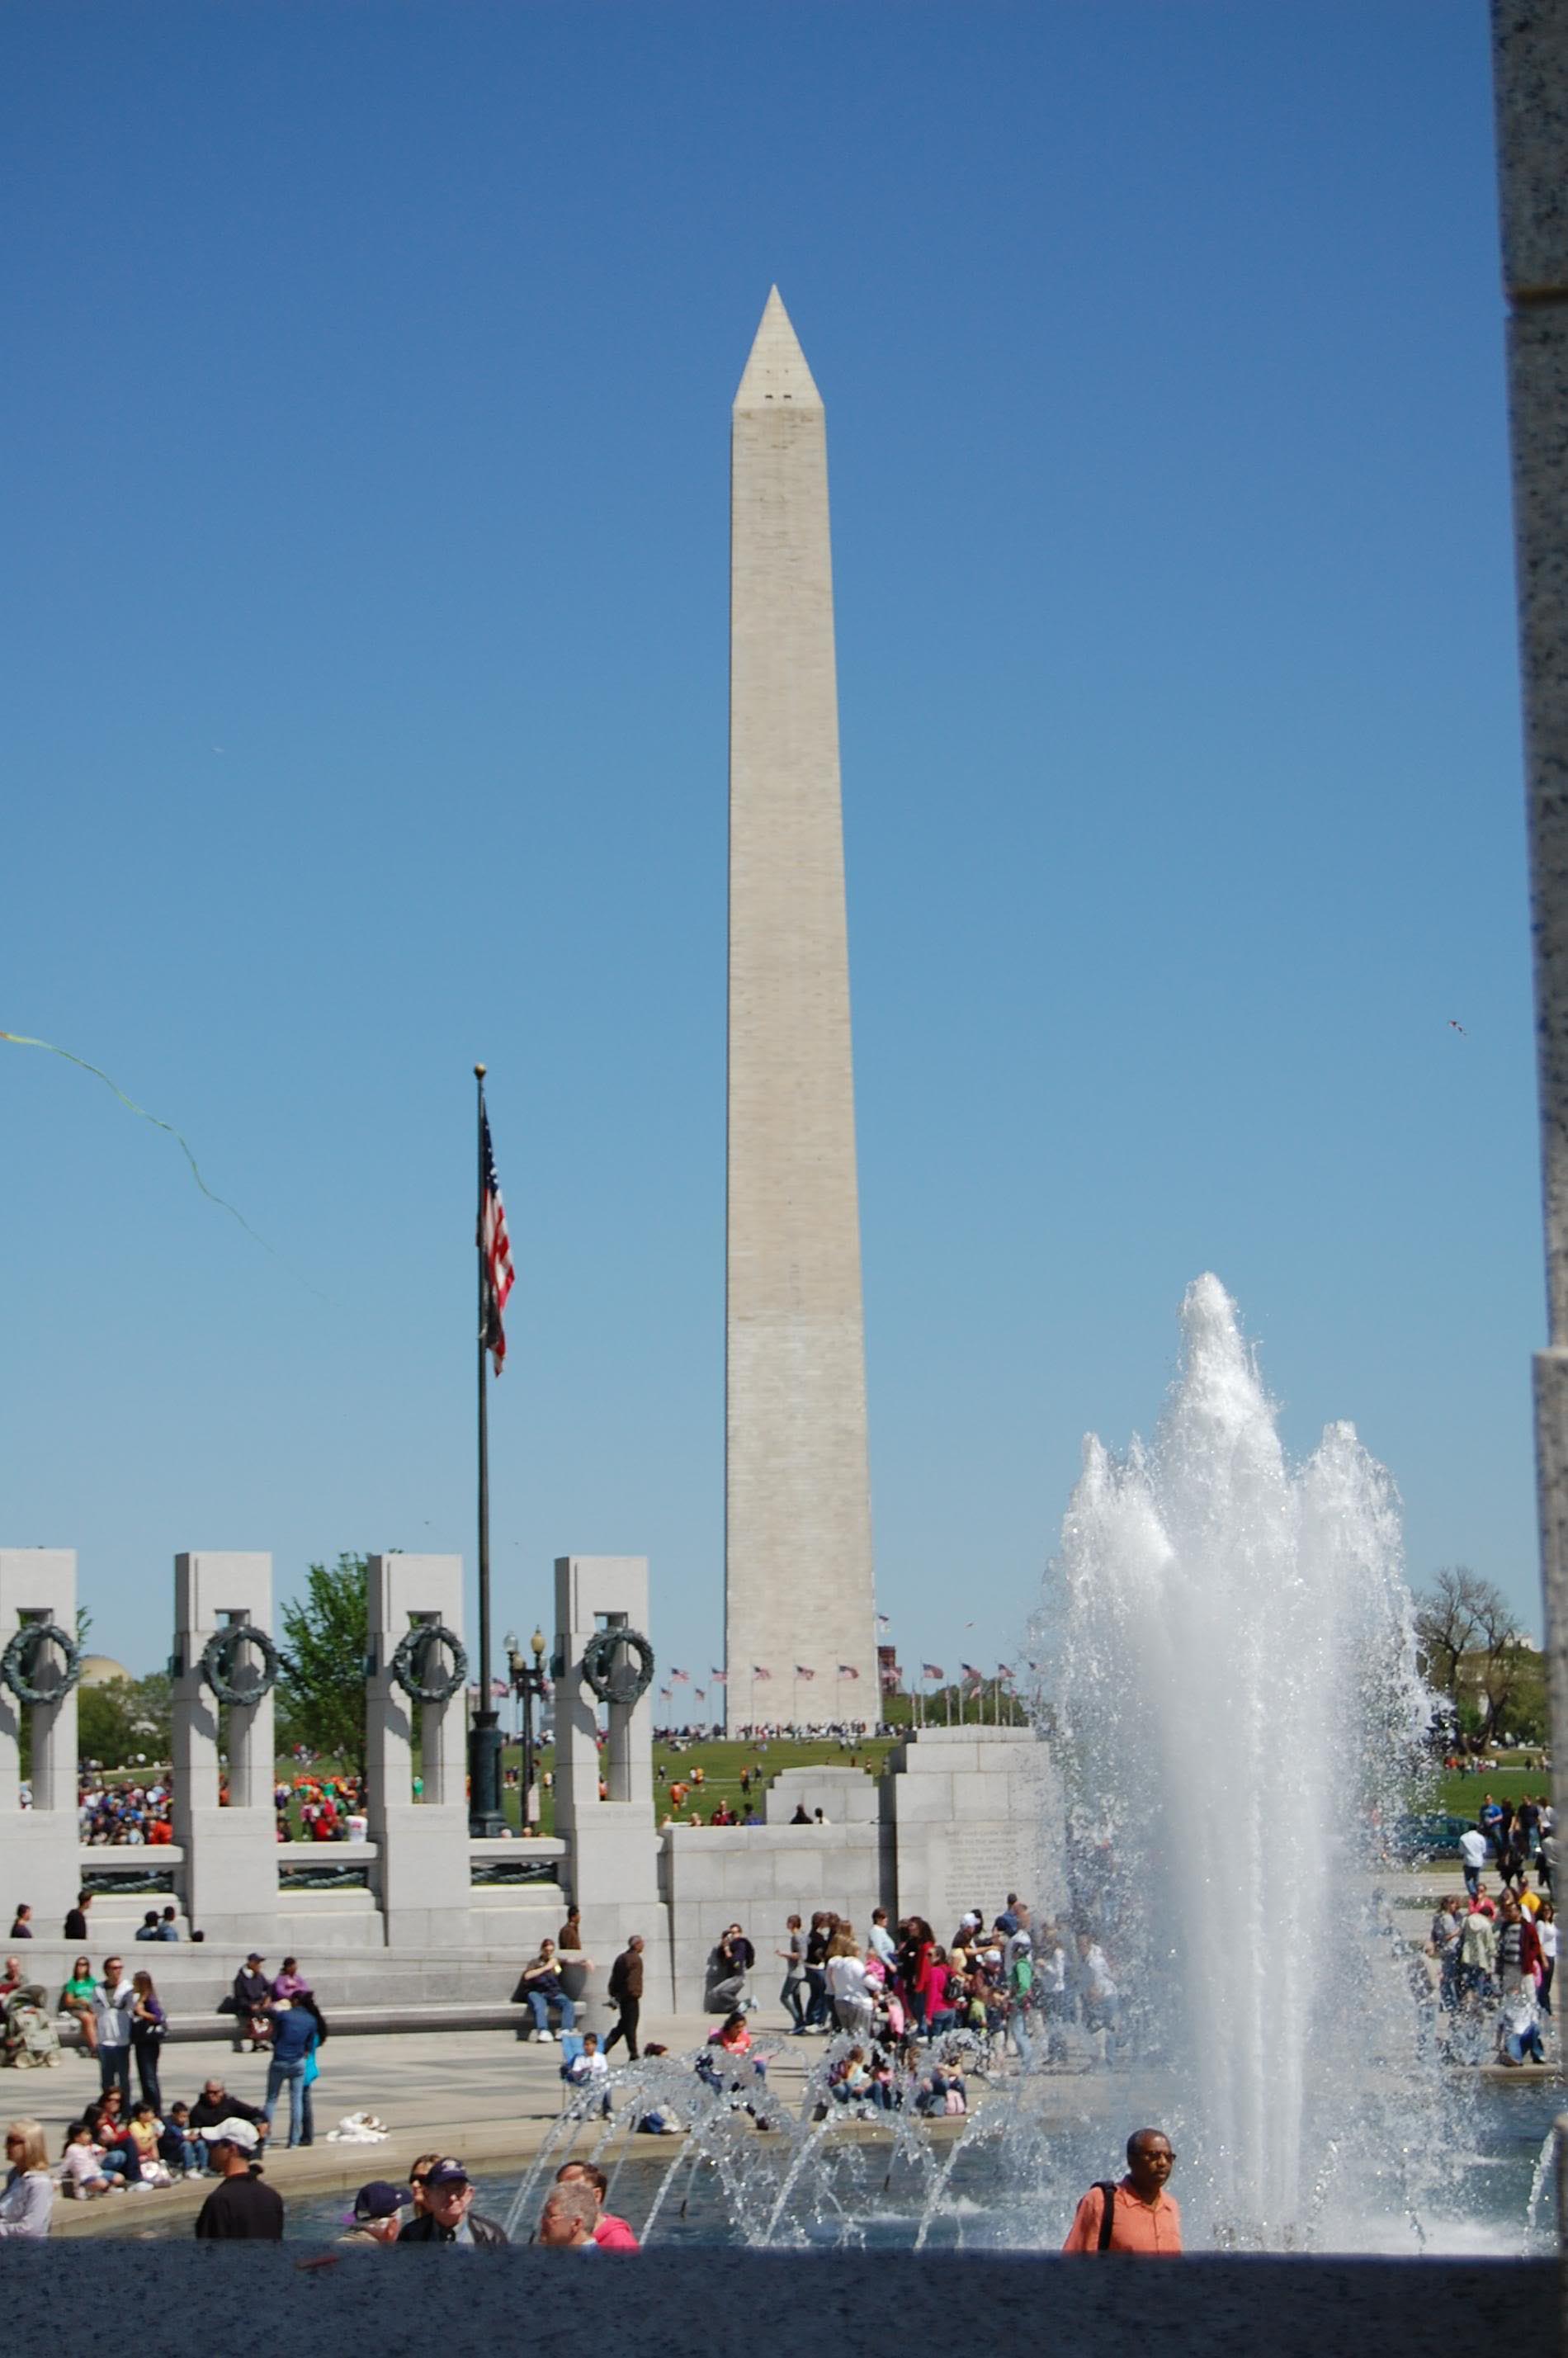 washington monument9 Washington Monument in DC